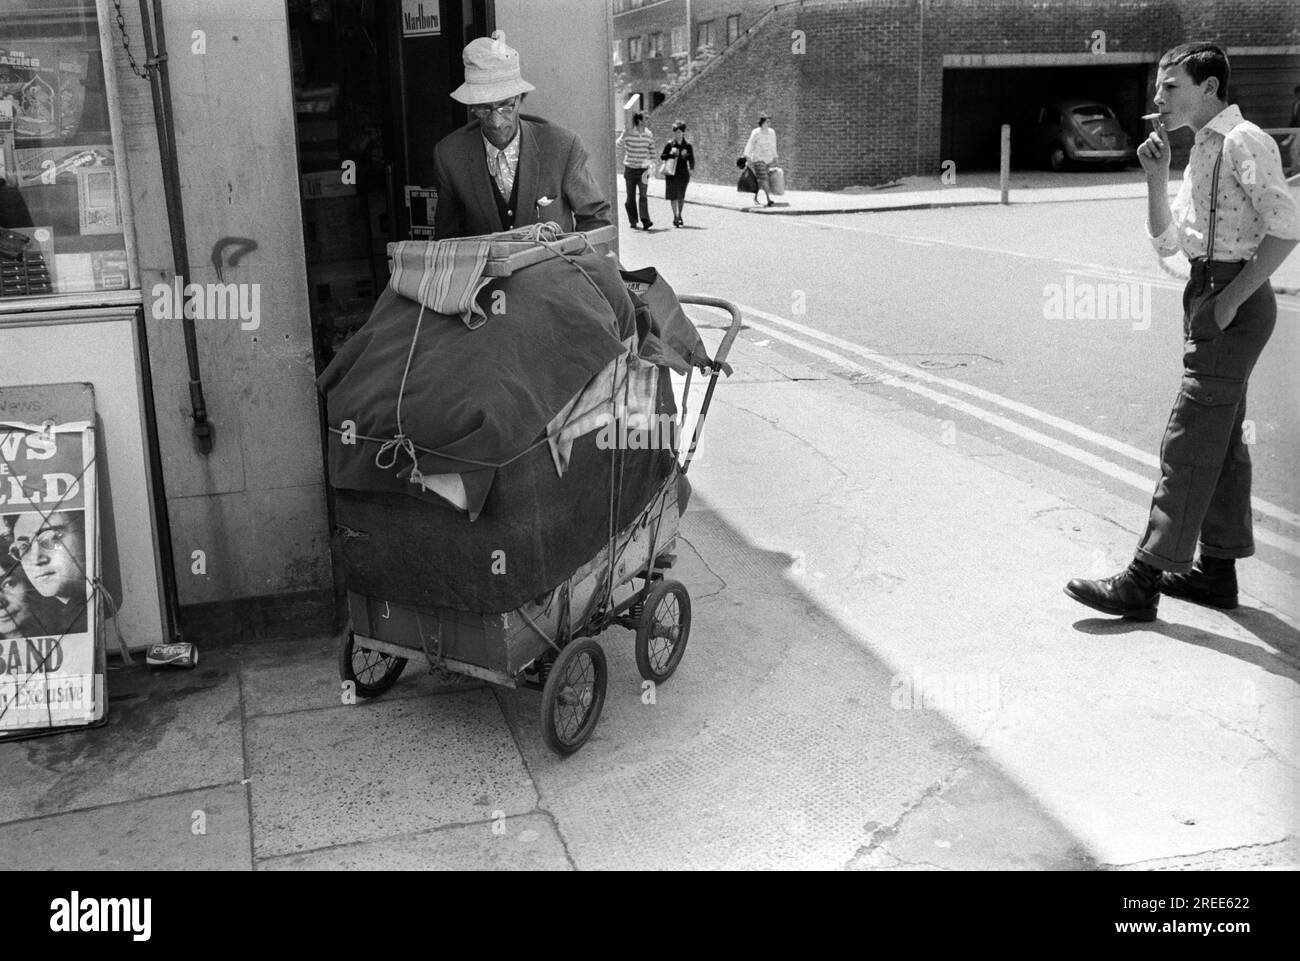 Skinhead oder Bovver Boy, der an einer Straßenecke rumhängt. Er trägt eine Hosenträger und kurze Hosen, damit man seine Bovver-Stiefel sehen kann, die gut waren, um jemandem einen „guten tritt“ zu geben. Der Look war modisch. Er schaut auf einen Obdachlosen, der all seine Besitztümer in einem Kinderwagen gestapelt hat. Tower Hamlets East London 1978. 1970S GB HOMER SYKES Stockfoto